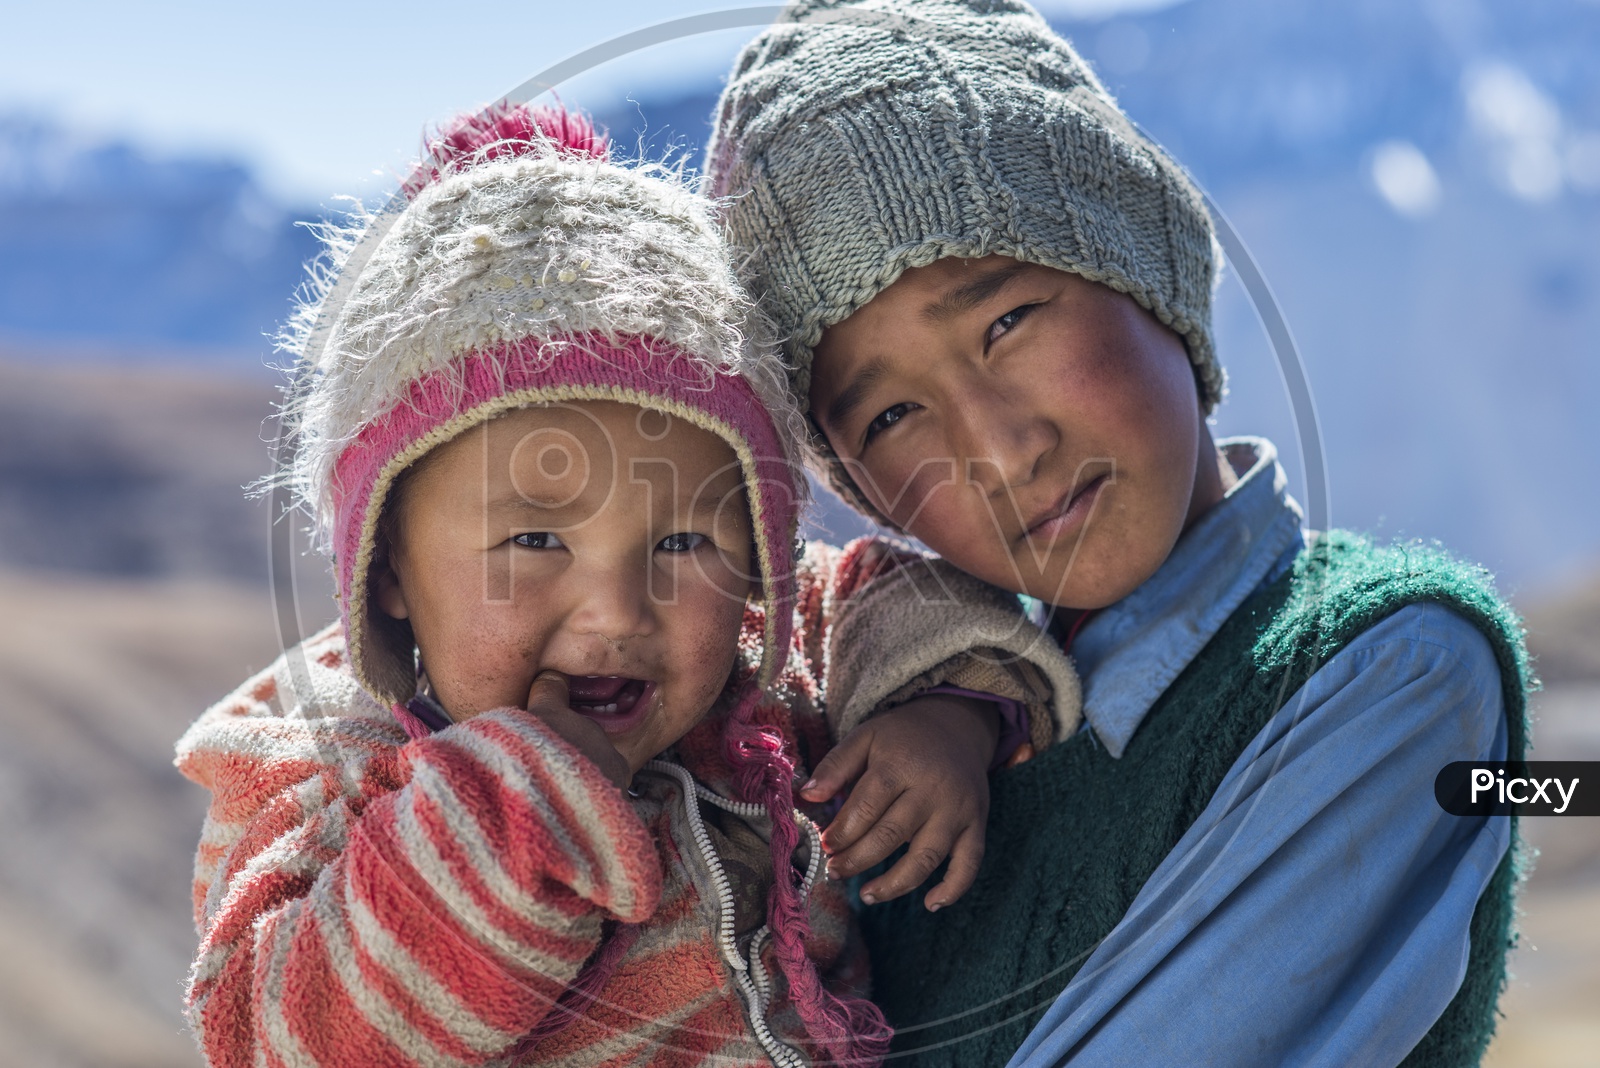 Kids from Hikkim Village, Spiti Valley